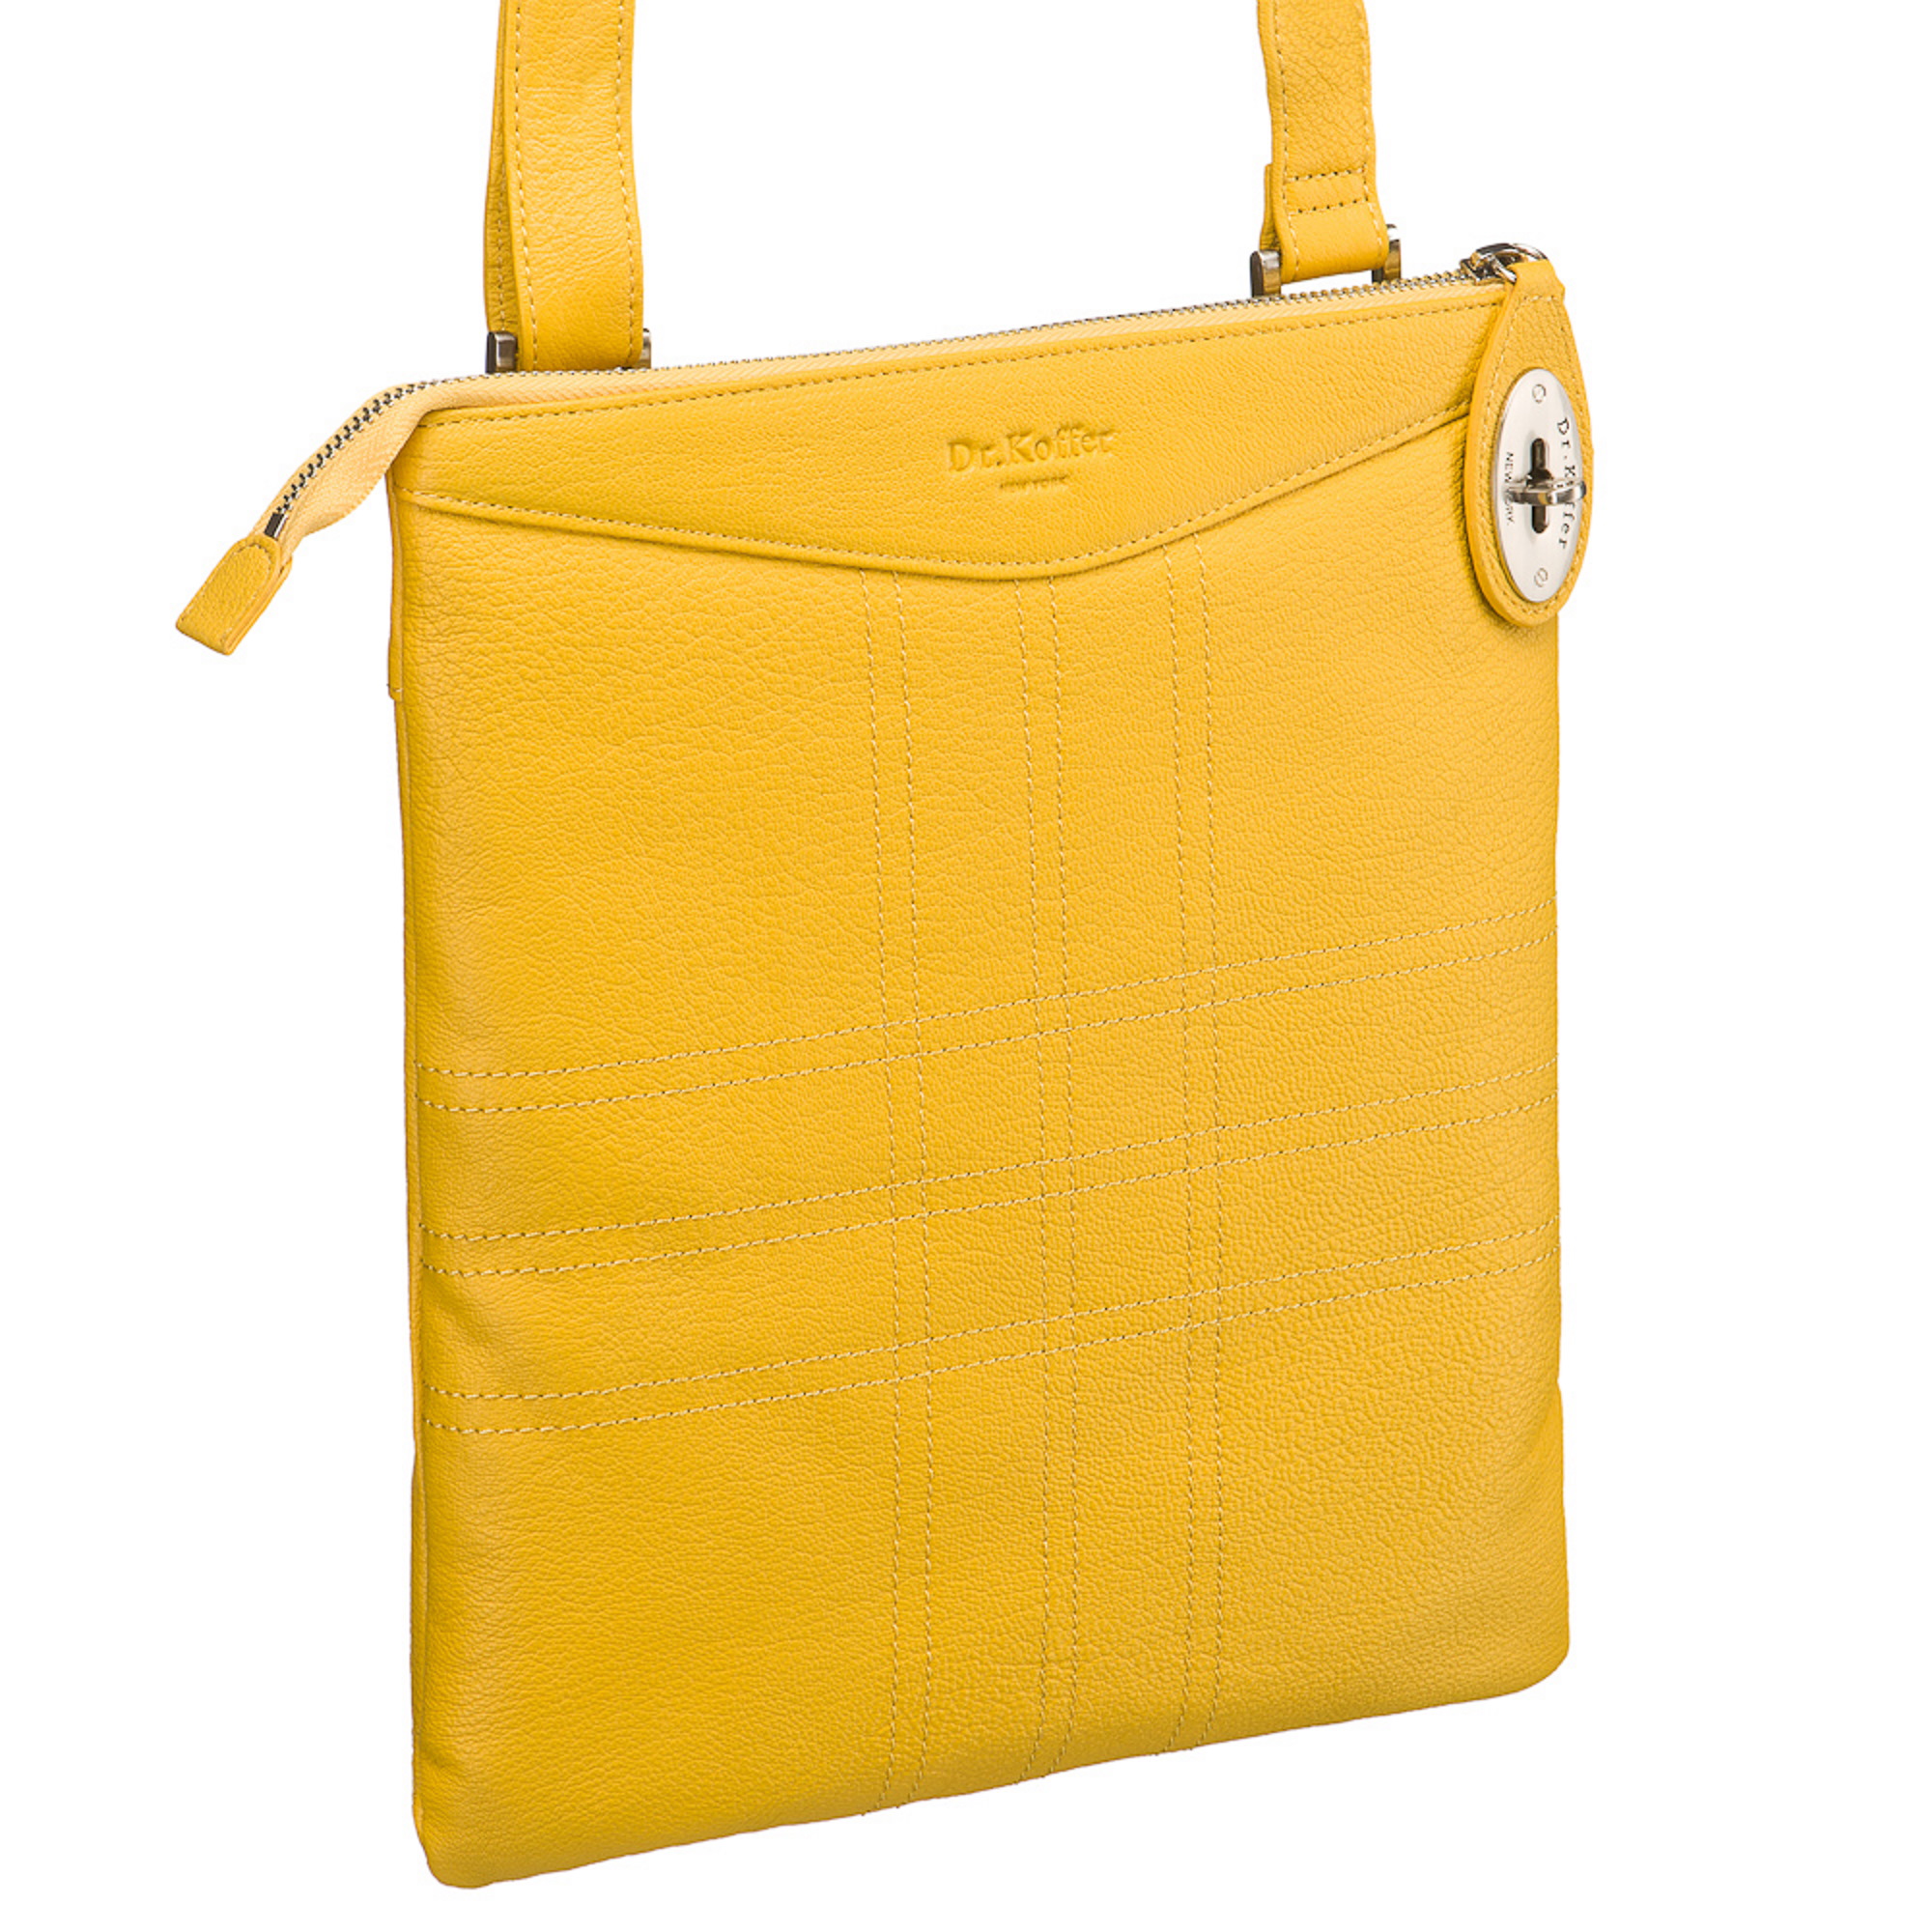 Др.Коффер M402523-170-67 сумка через плечо, цвет желтый - фото 1